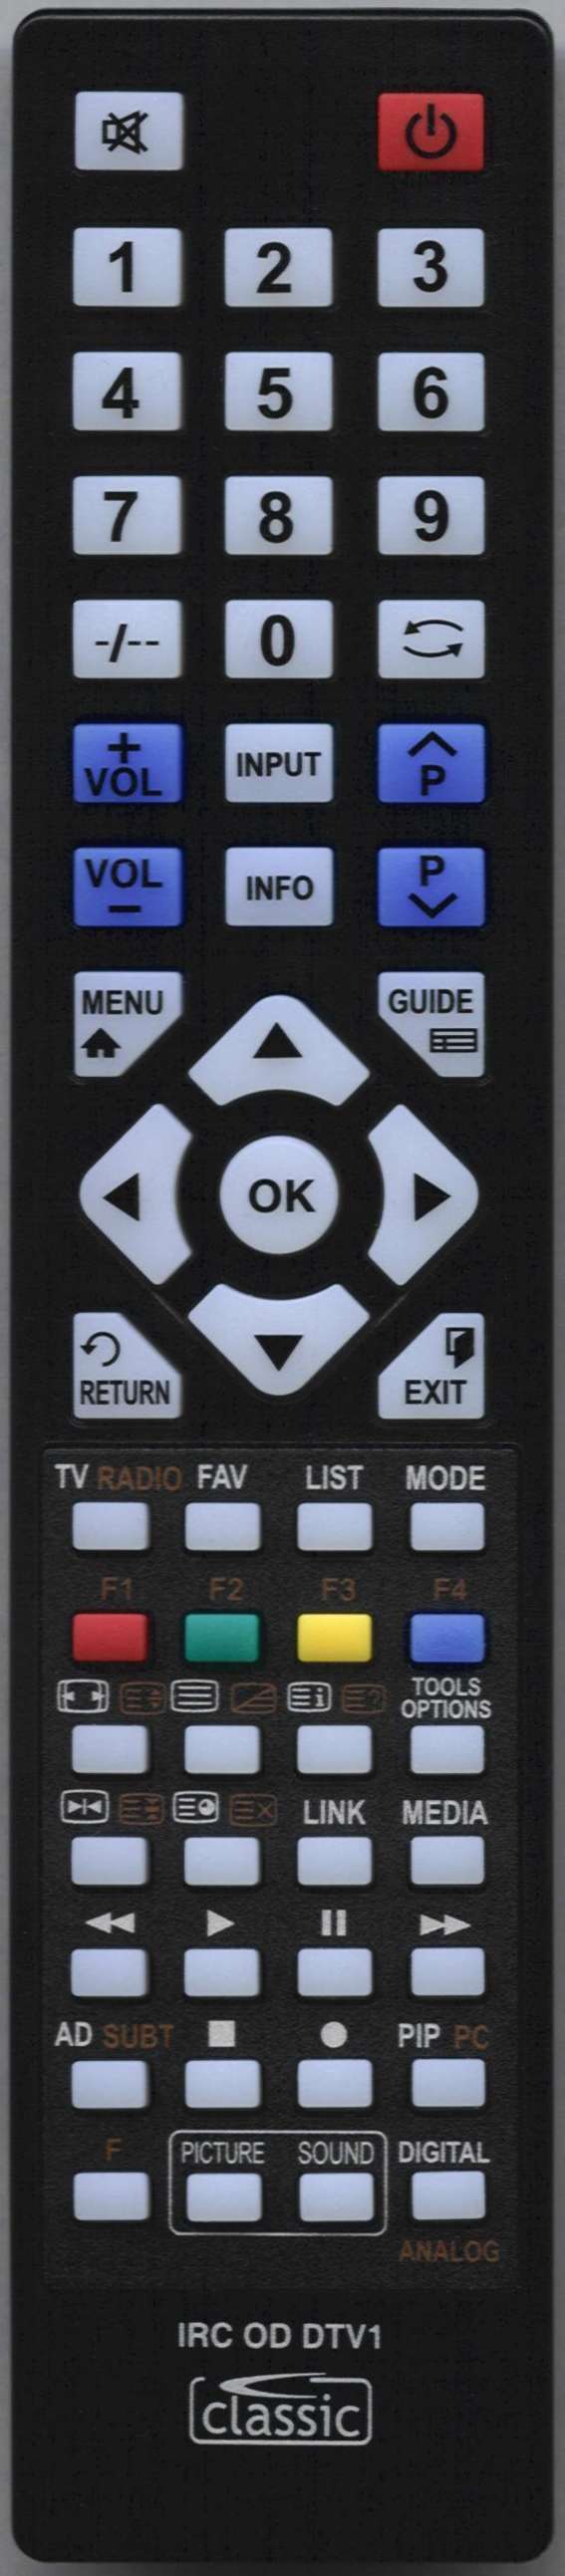 LUXOR RC-4390 Remote Control Alternative 